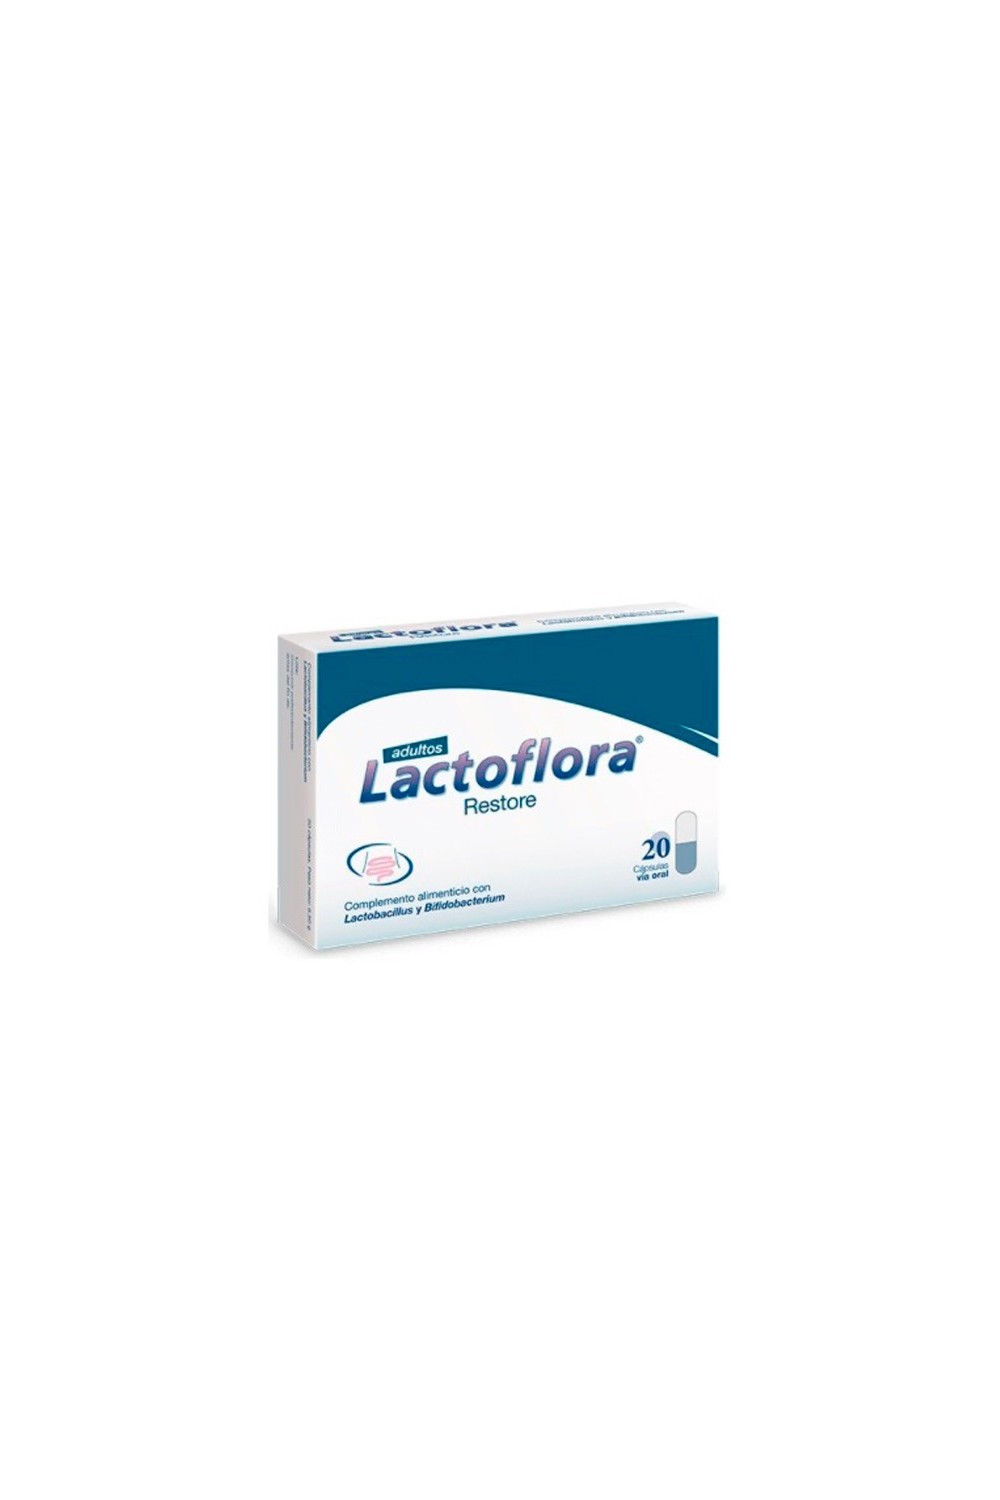 Lactoflora Restore Adults 20 capsules